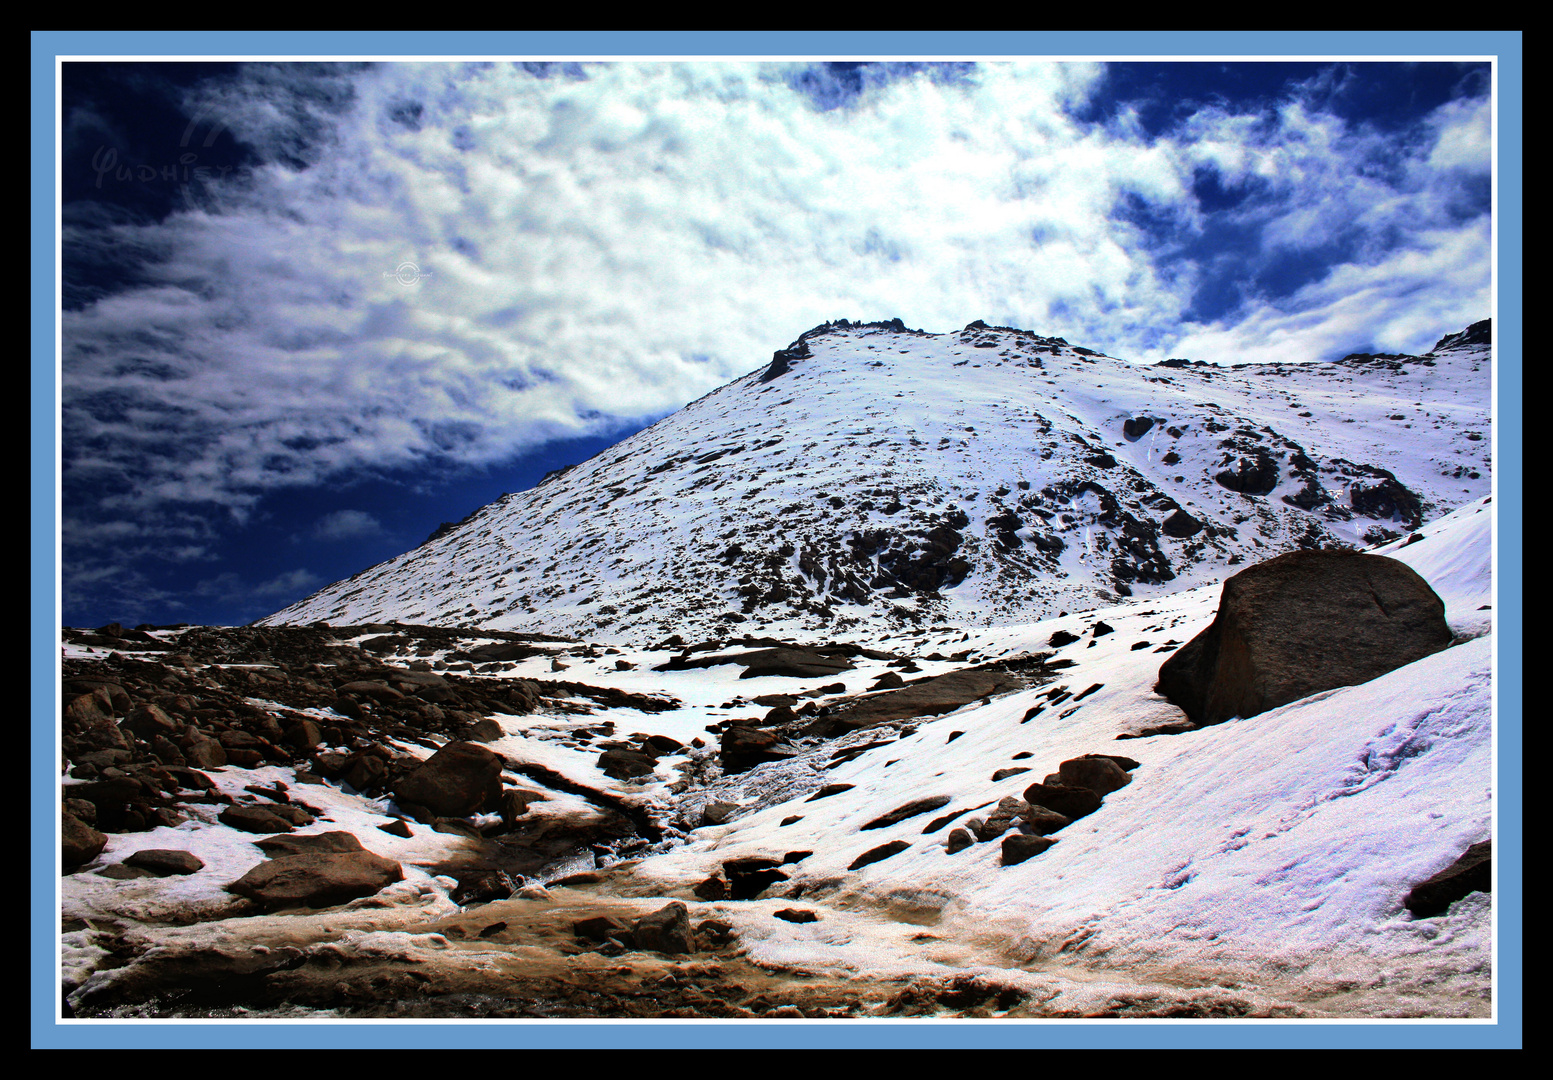 Top of Ladakh!